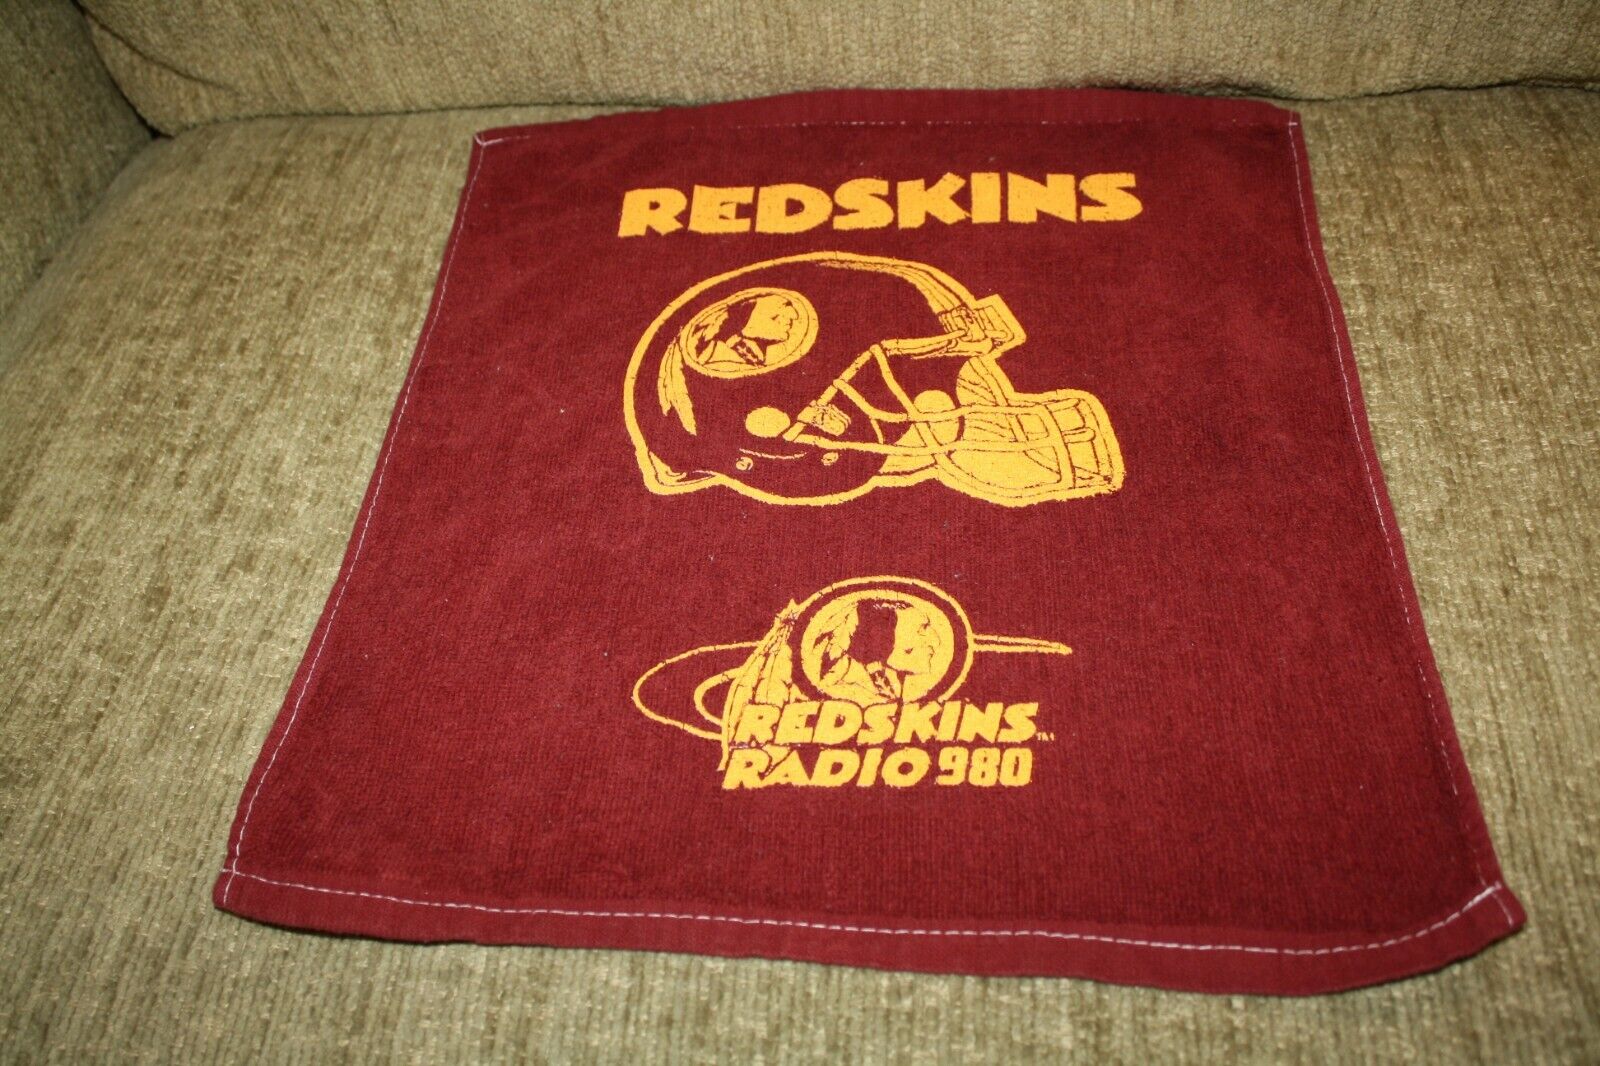 Rare Vintage Washington Redskins Radio 980 NFL Football Towel 